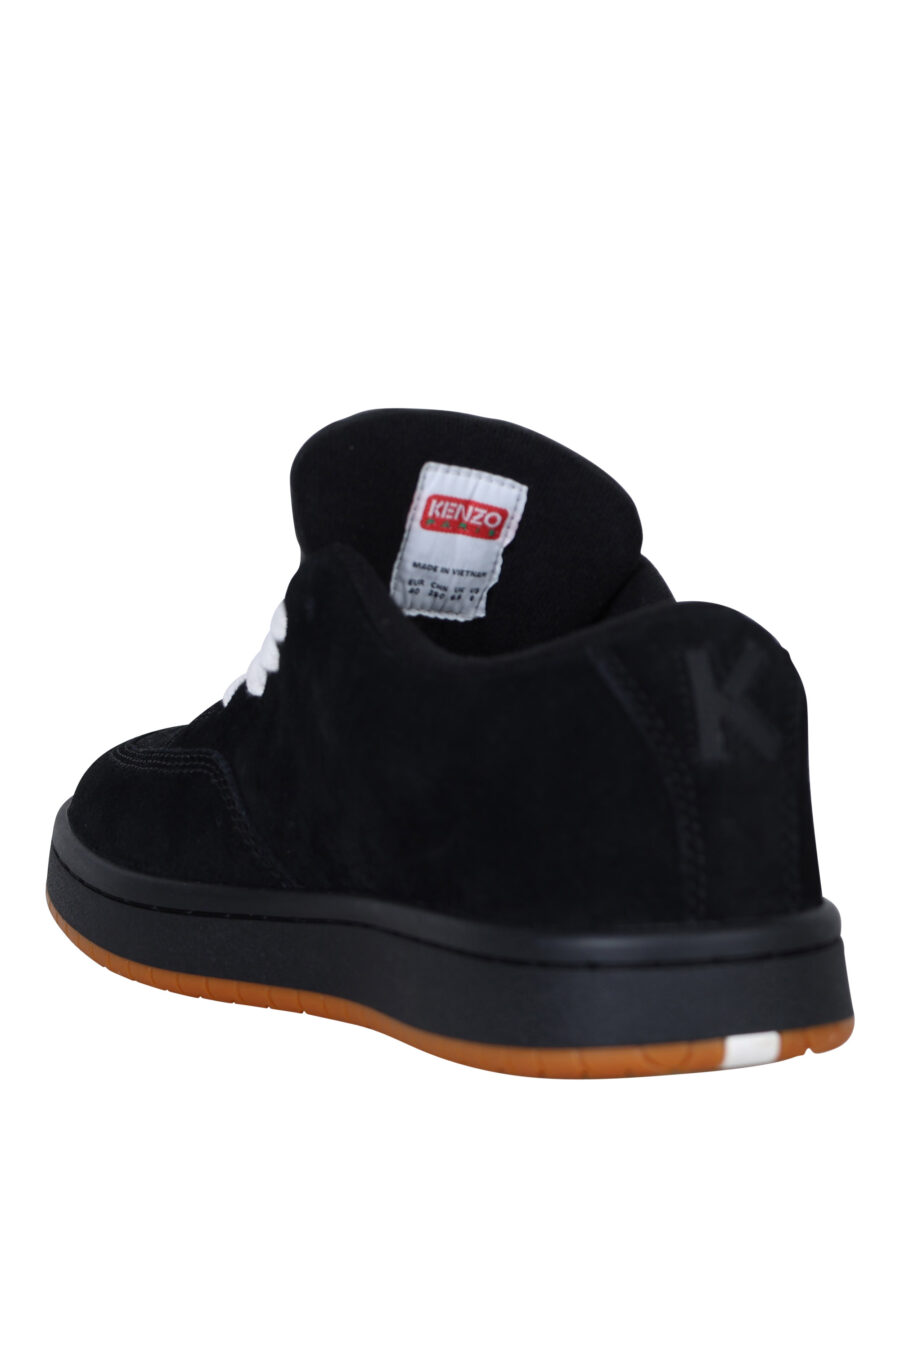 Zapatillas negras "kenzo dome" con minilogo y suela marrón - 3612230549111 3